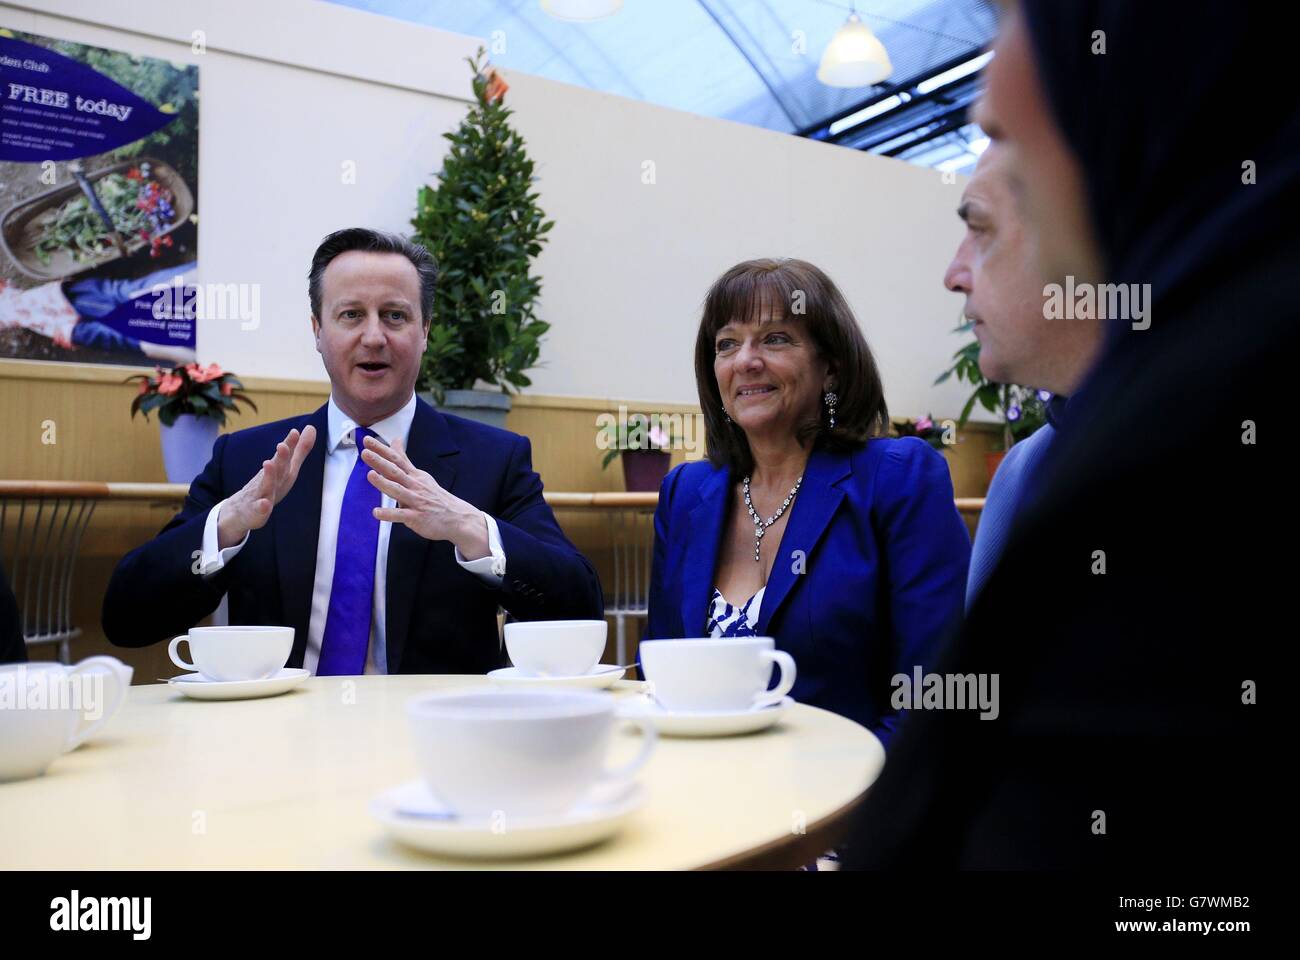 Il primo ministro David Cameron e il suo attivista per le pensioni Ros Altmann, che diventerà ministro se i conservatori saranno rieletti, parlano con persone che si avvicinano all'età pensionabile al Melbicks Garden Centre di Birmingham, durante la campagna elettorale generale. Foto Stock